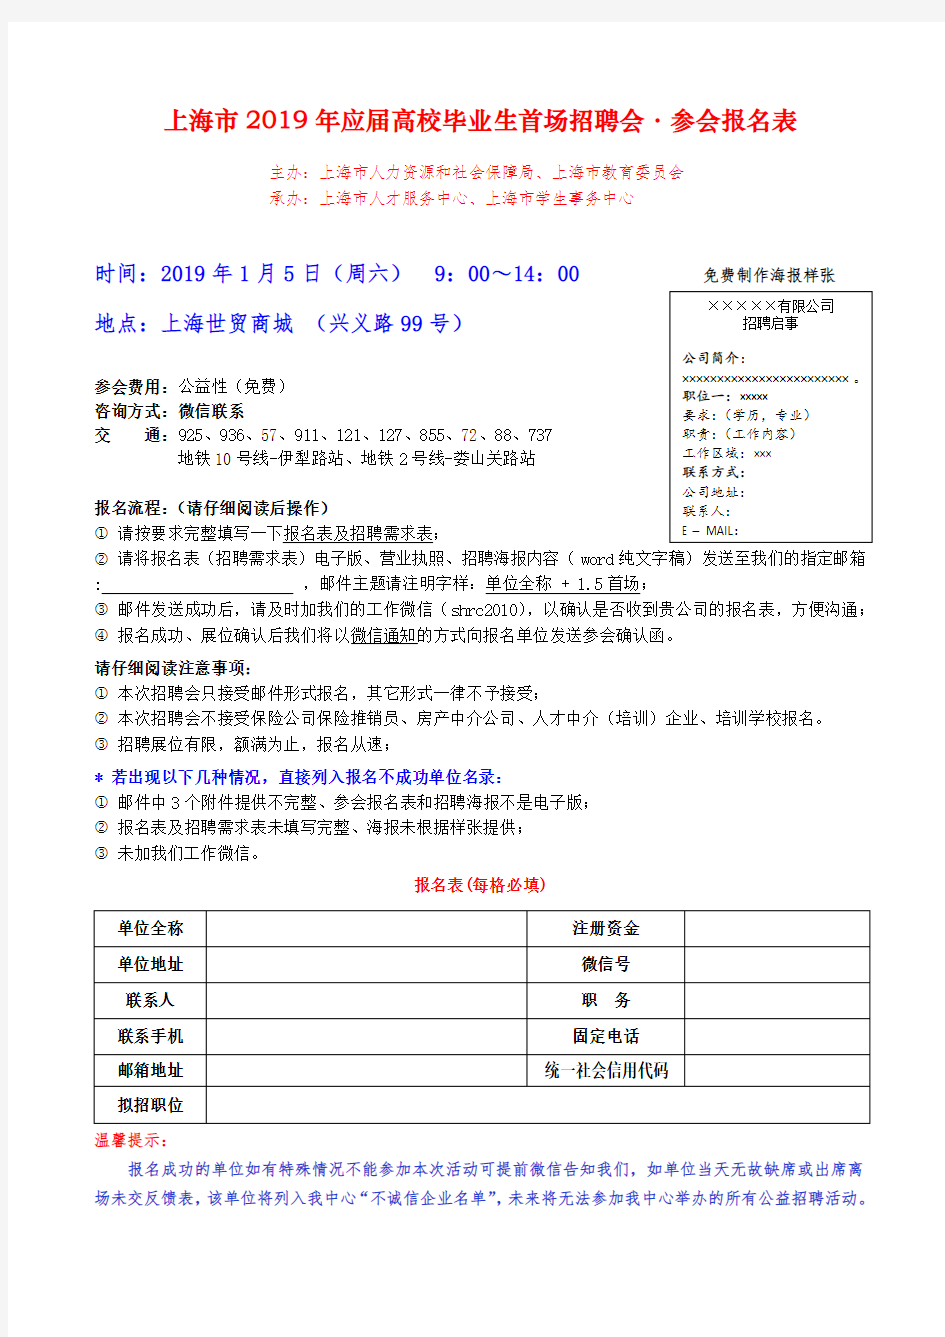 上海市2019年应届高校毕业生首场招聘会·参会报名表